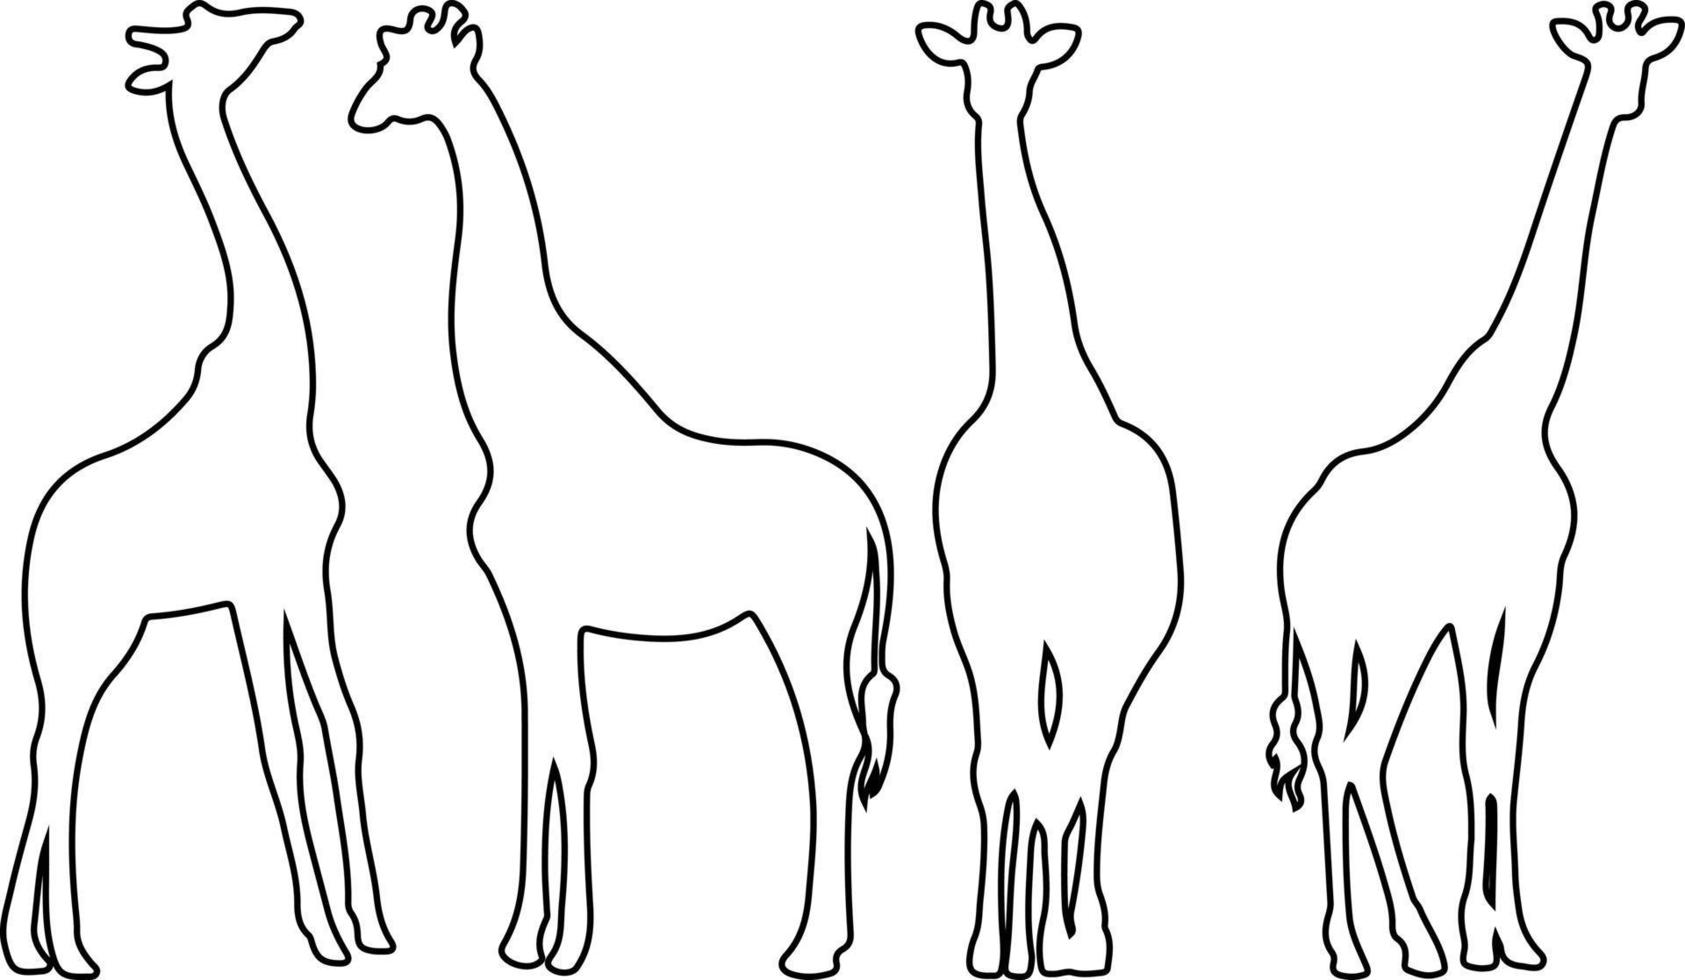 Giraffen-Silhouette-Vektor für Websites, Grafiken im Zusammenhang mit Kunstwerken vektor